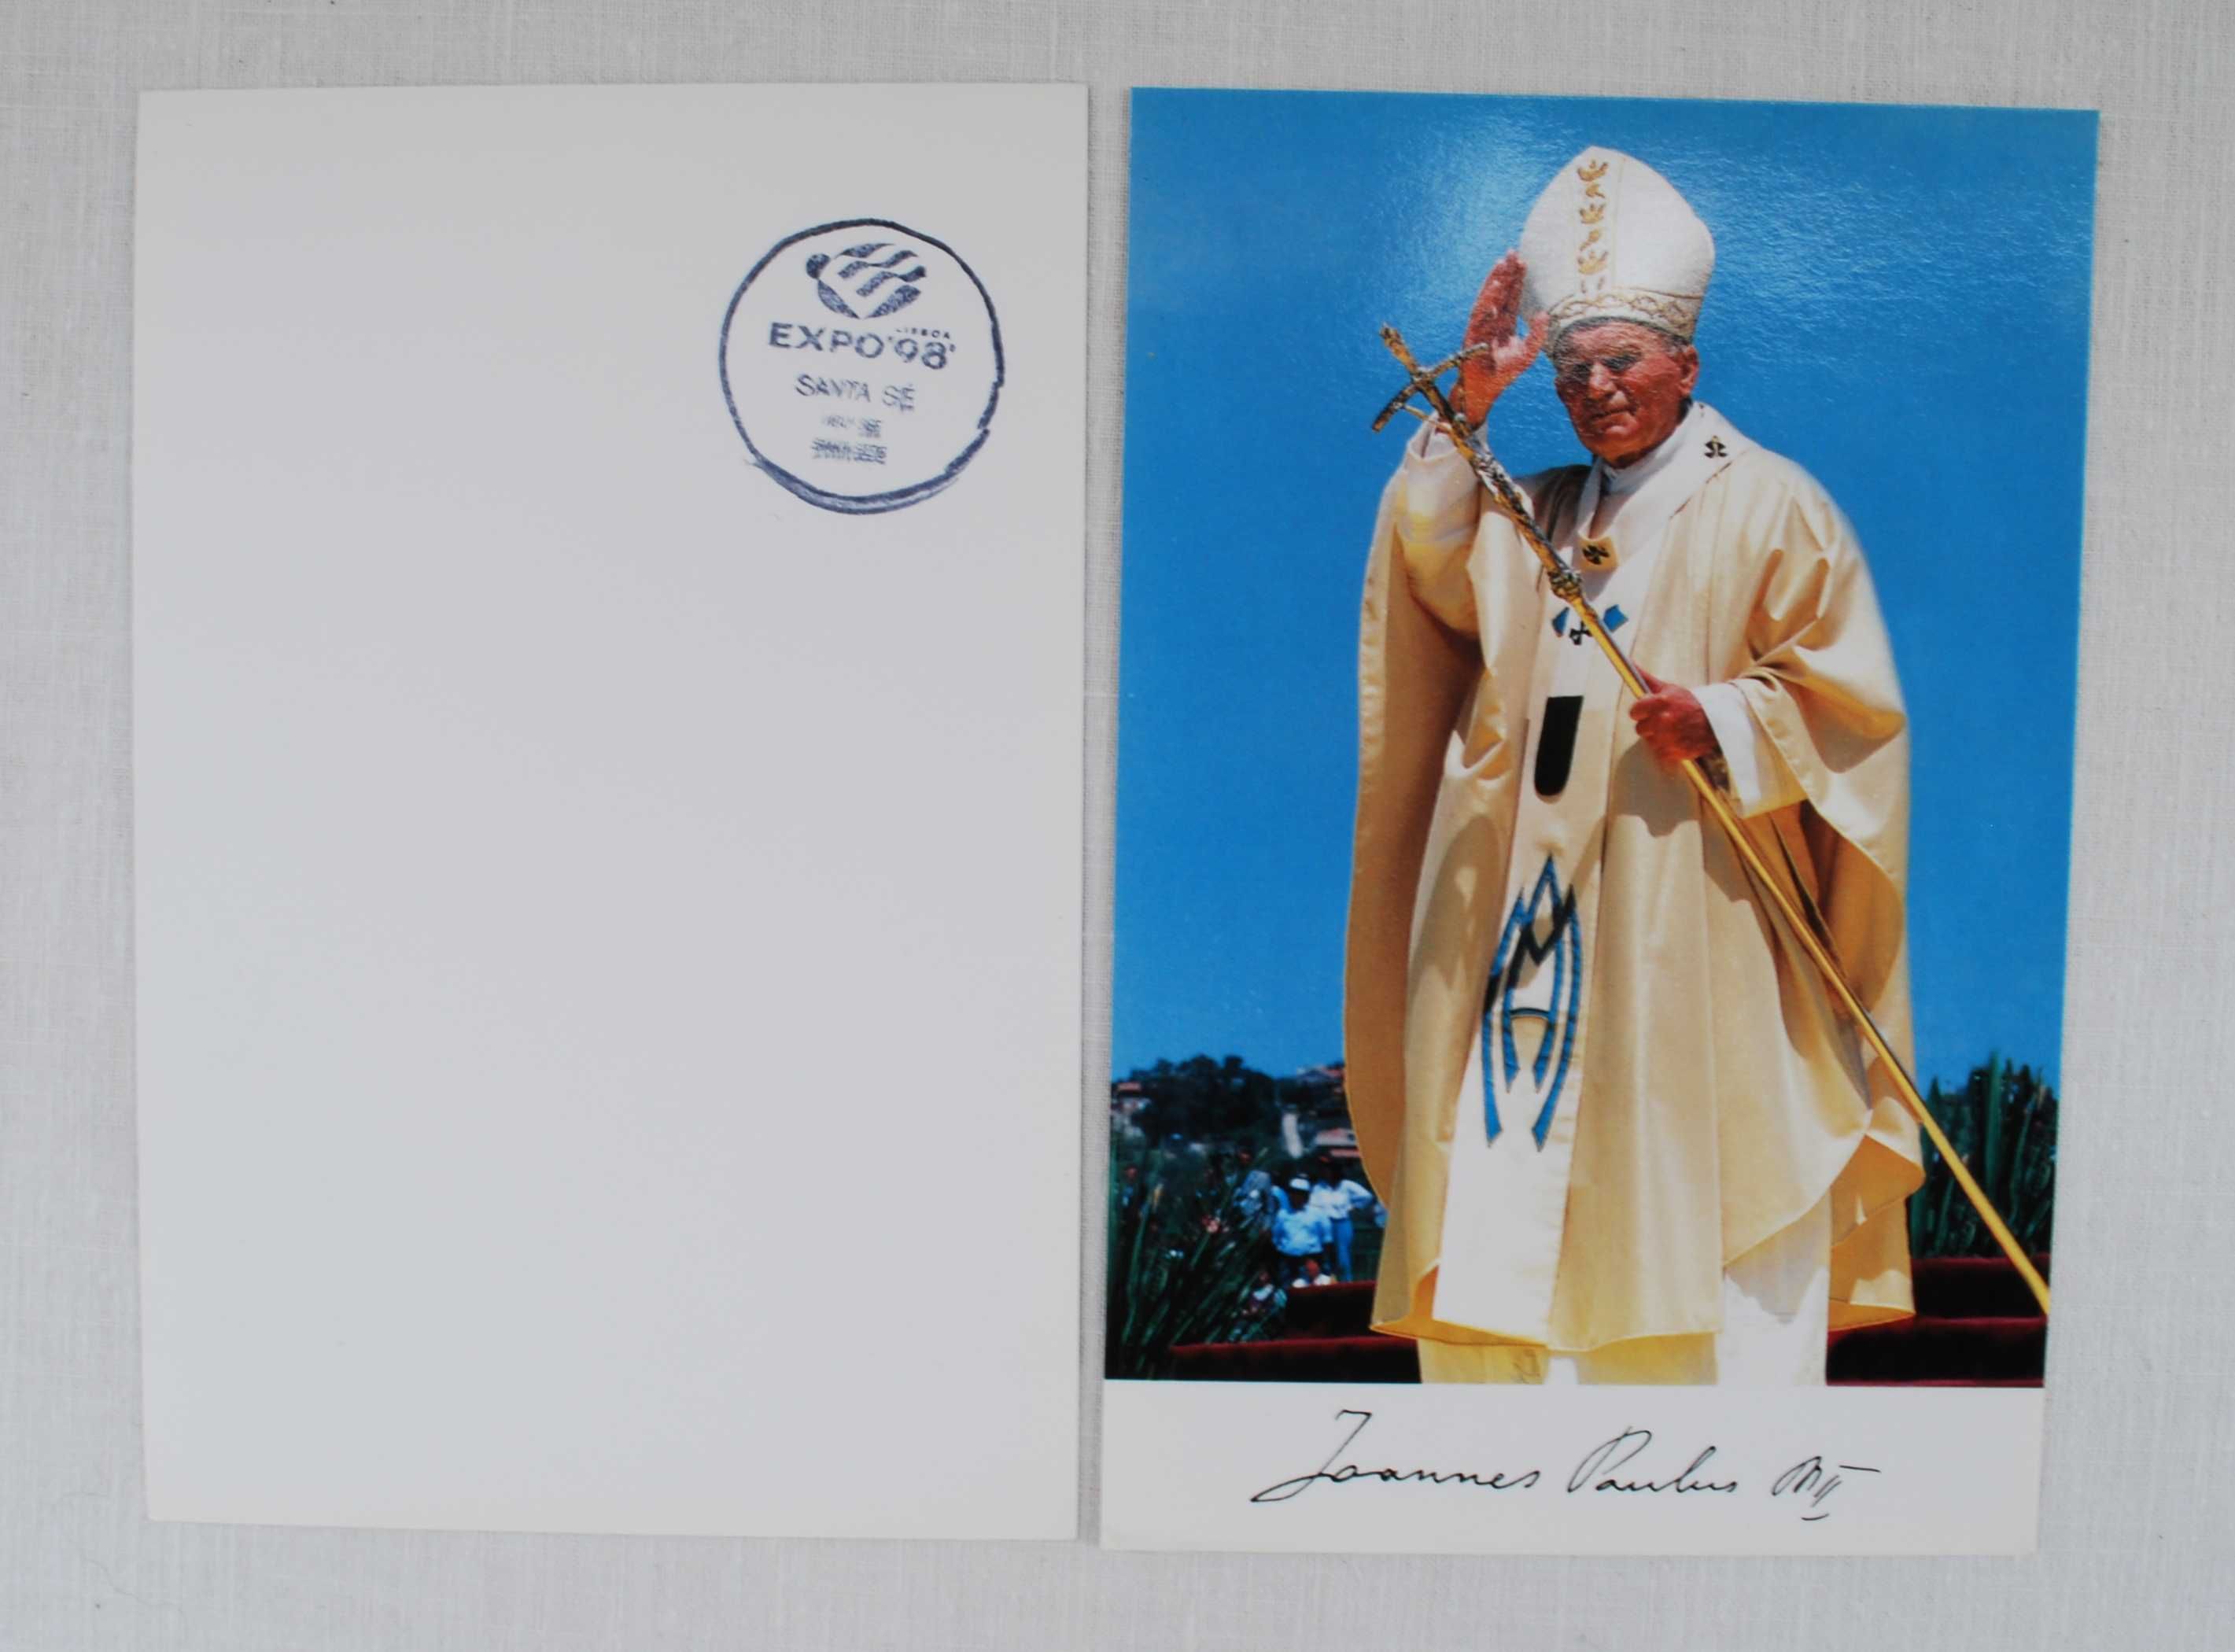 Foto / Postal de João Paulo II com carimbo da Expo 98